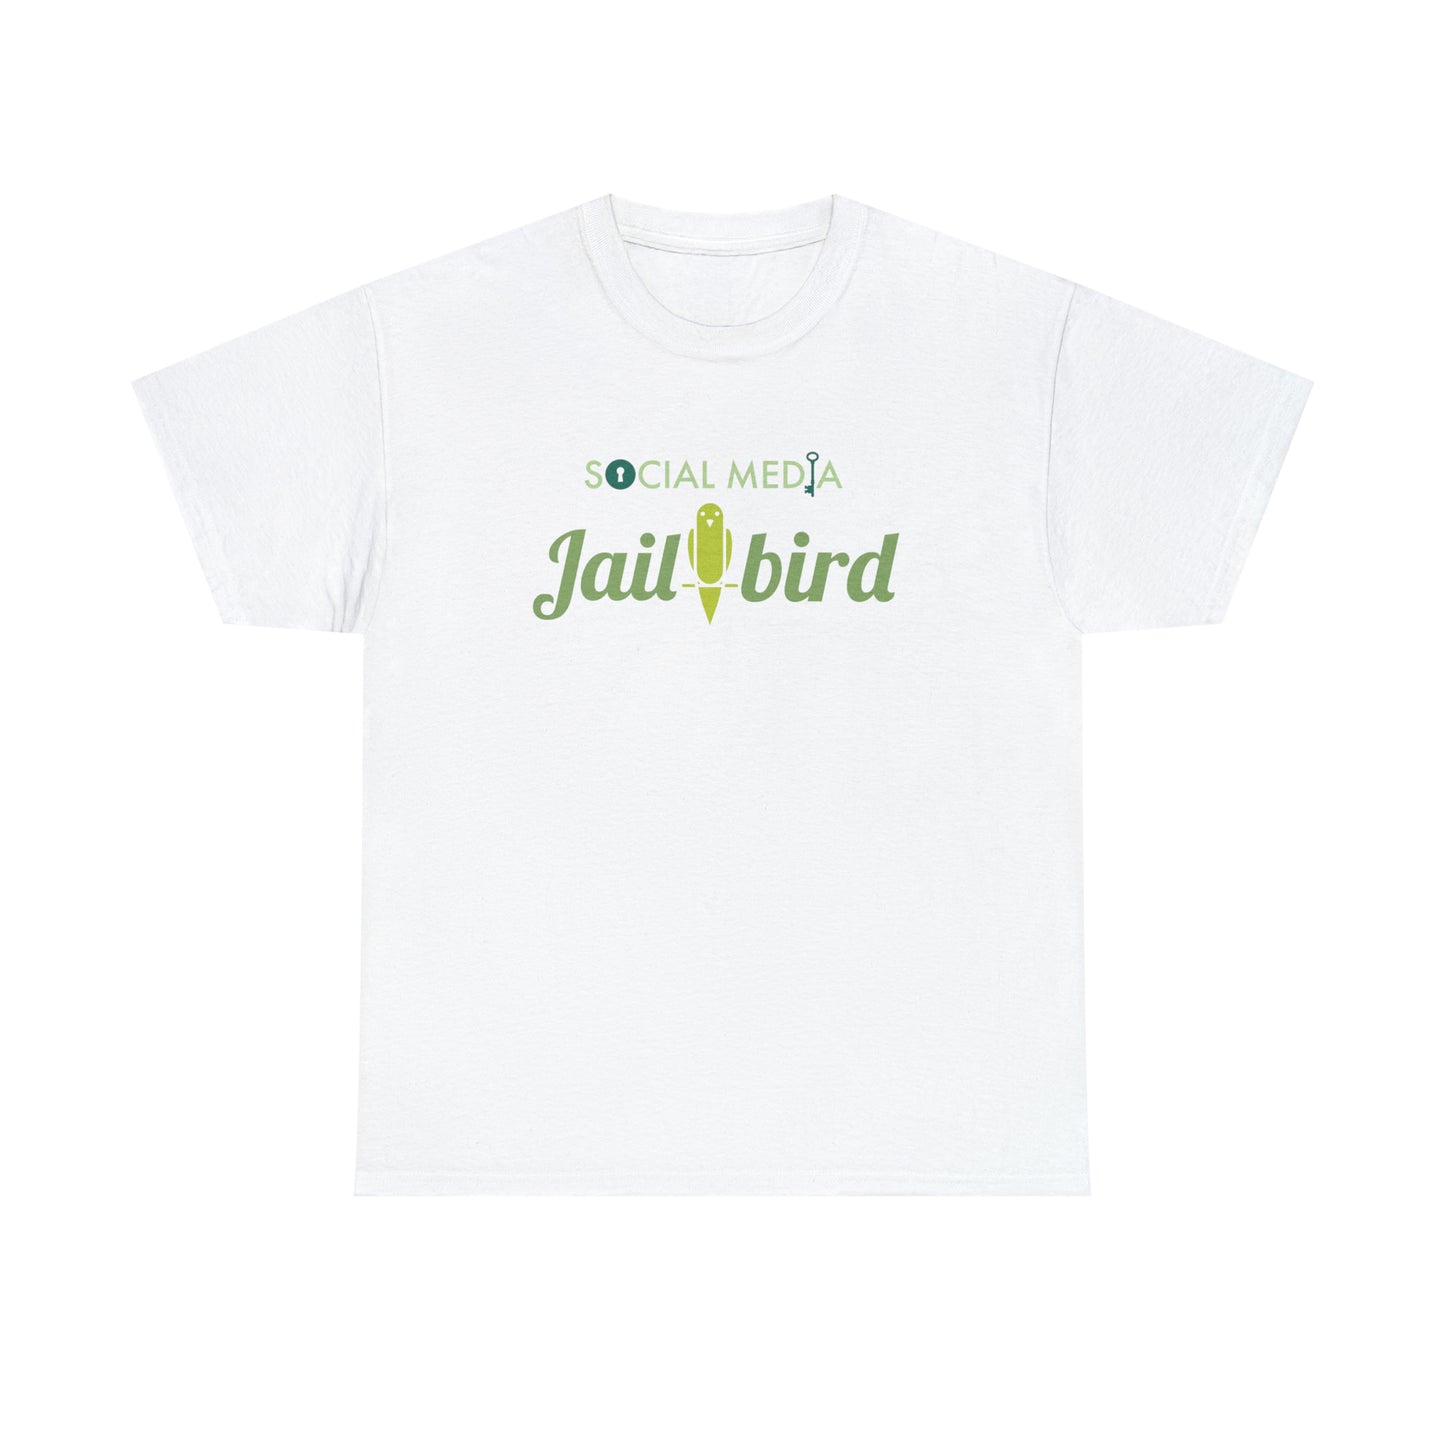 Censorship T-Shirt for Social Media Jailbird TShirt For Conservative T Shirt Censorship Shirt For First Amendment Gift For Free Thinker